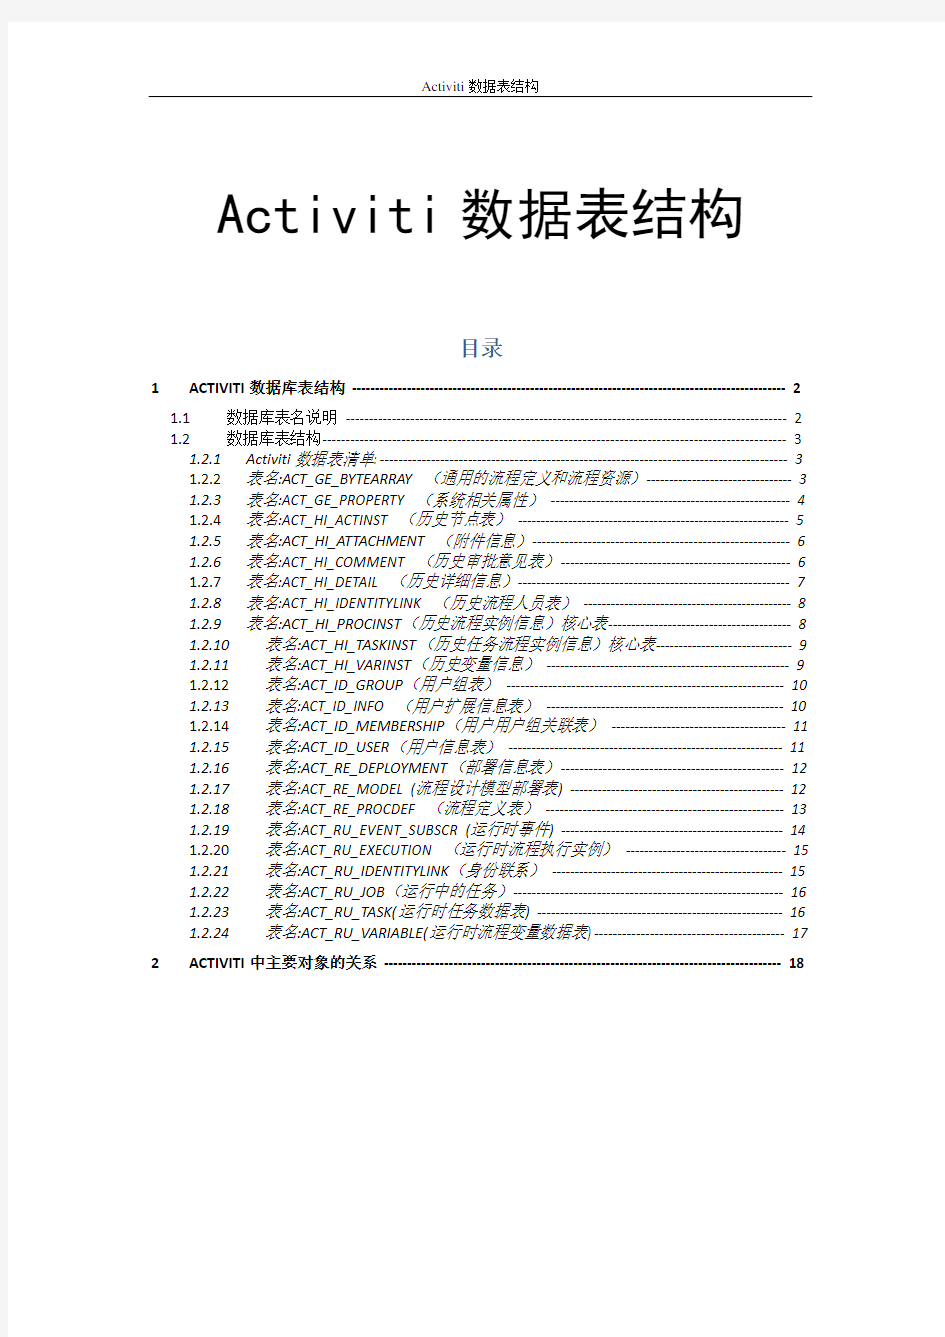 Activiti工作流数据库表结构